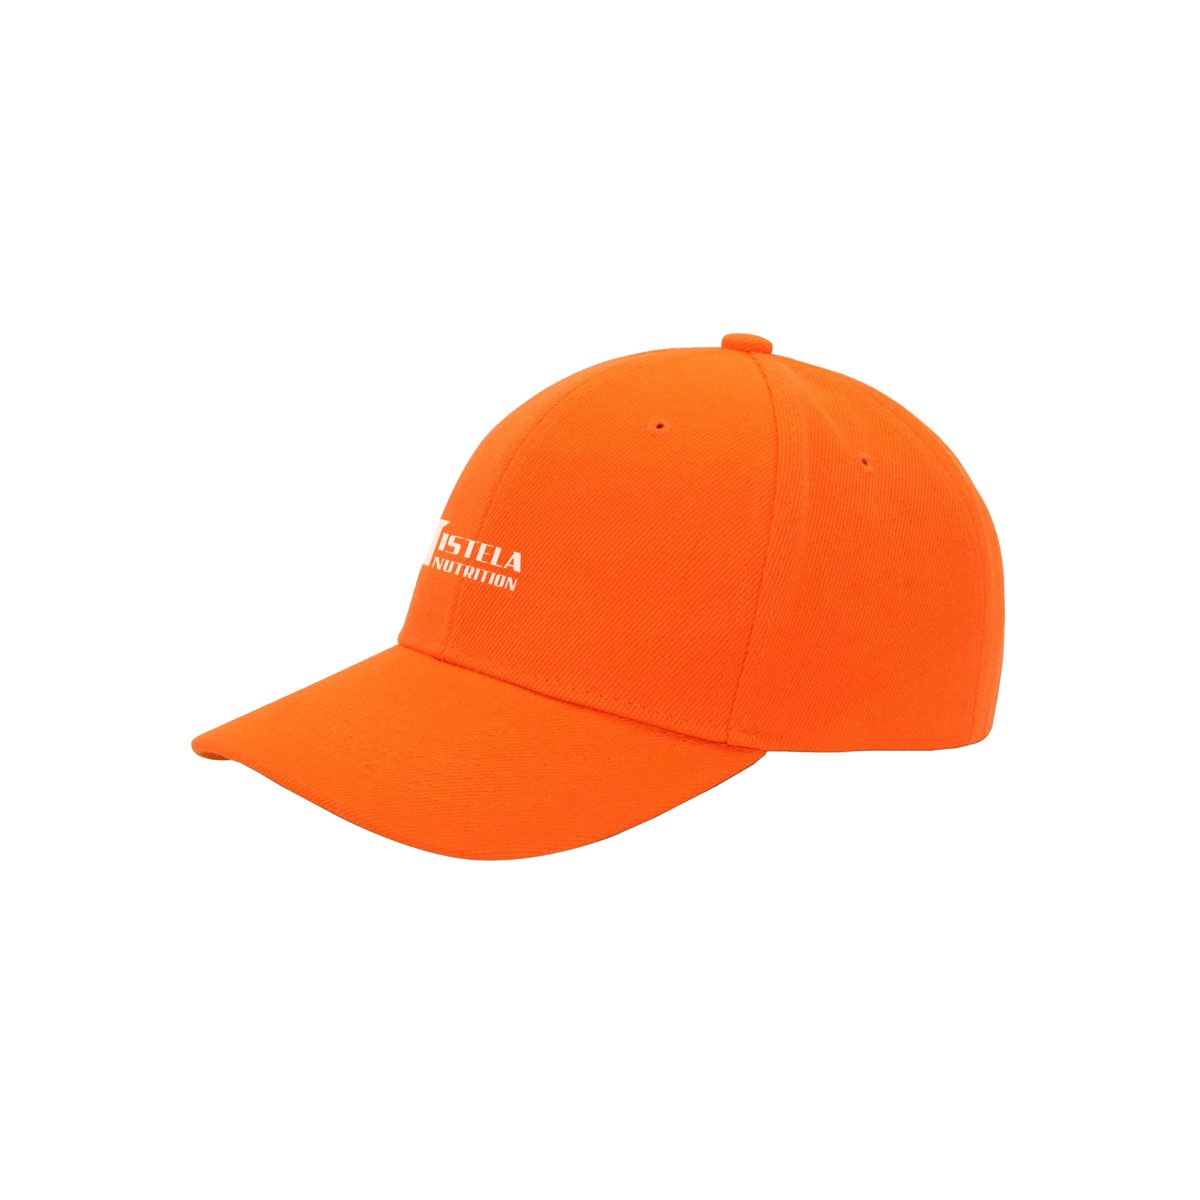 orange sun hat